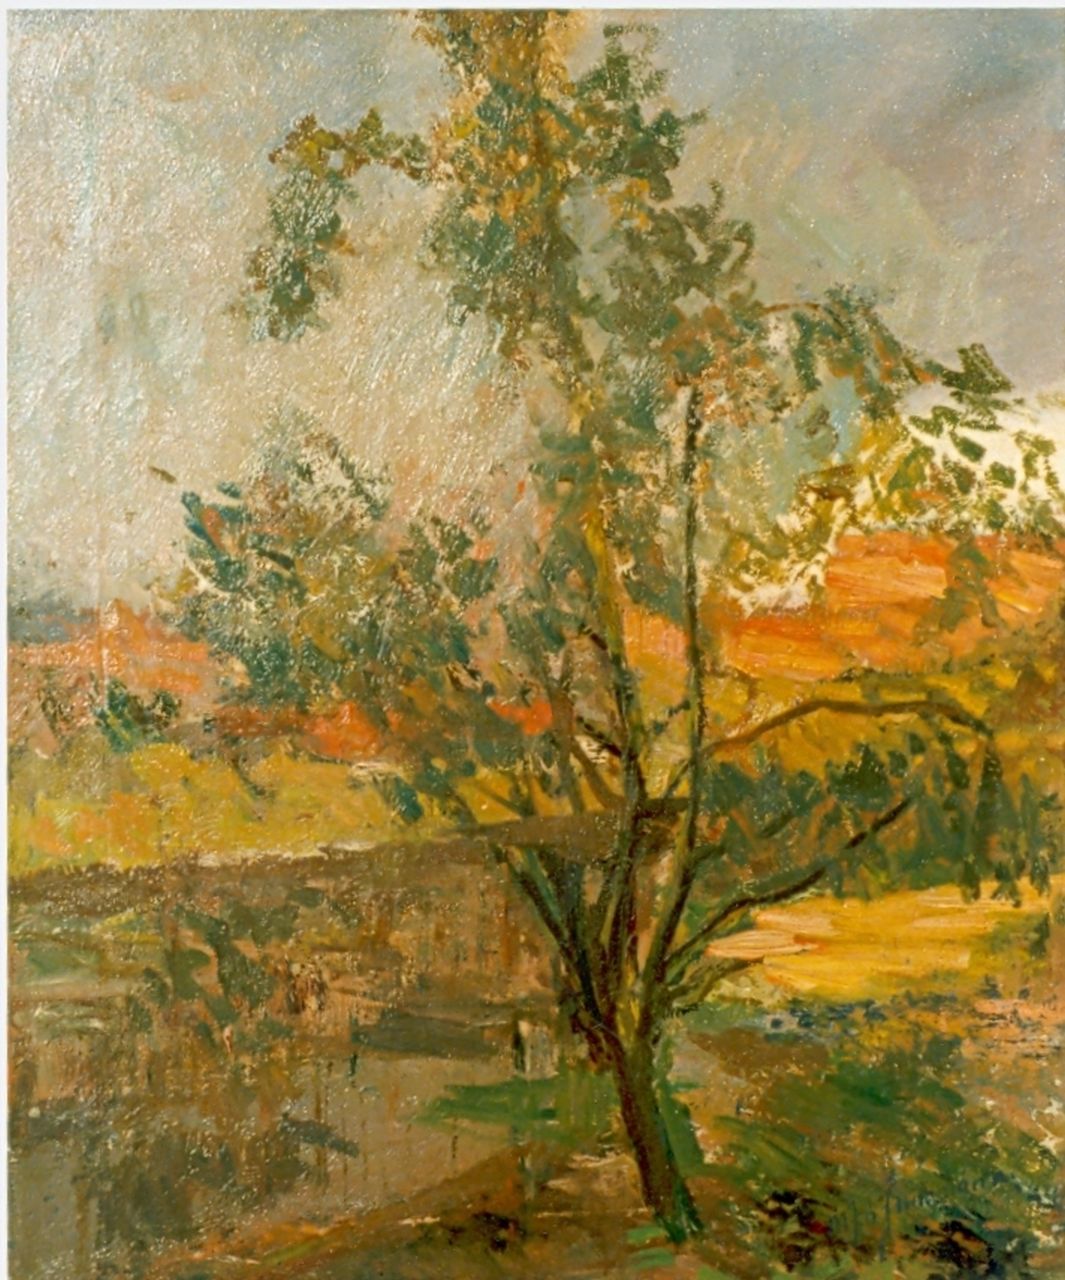 Jungmann M.J.B.  | 'Maarten' Johannes Balthasar Jungmann, A tree in a summer landscape, Öl auf Leinwand 57,3 x 48,0 cm, signed l.r.